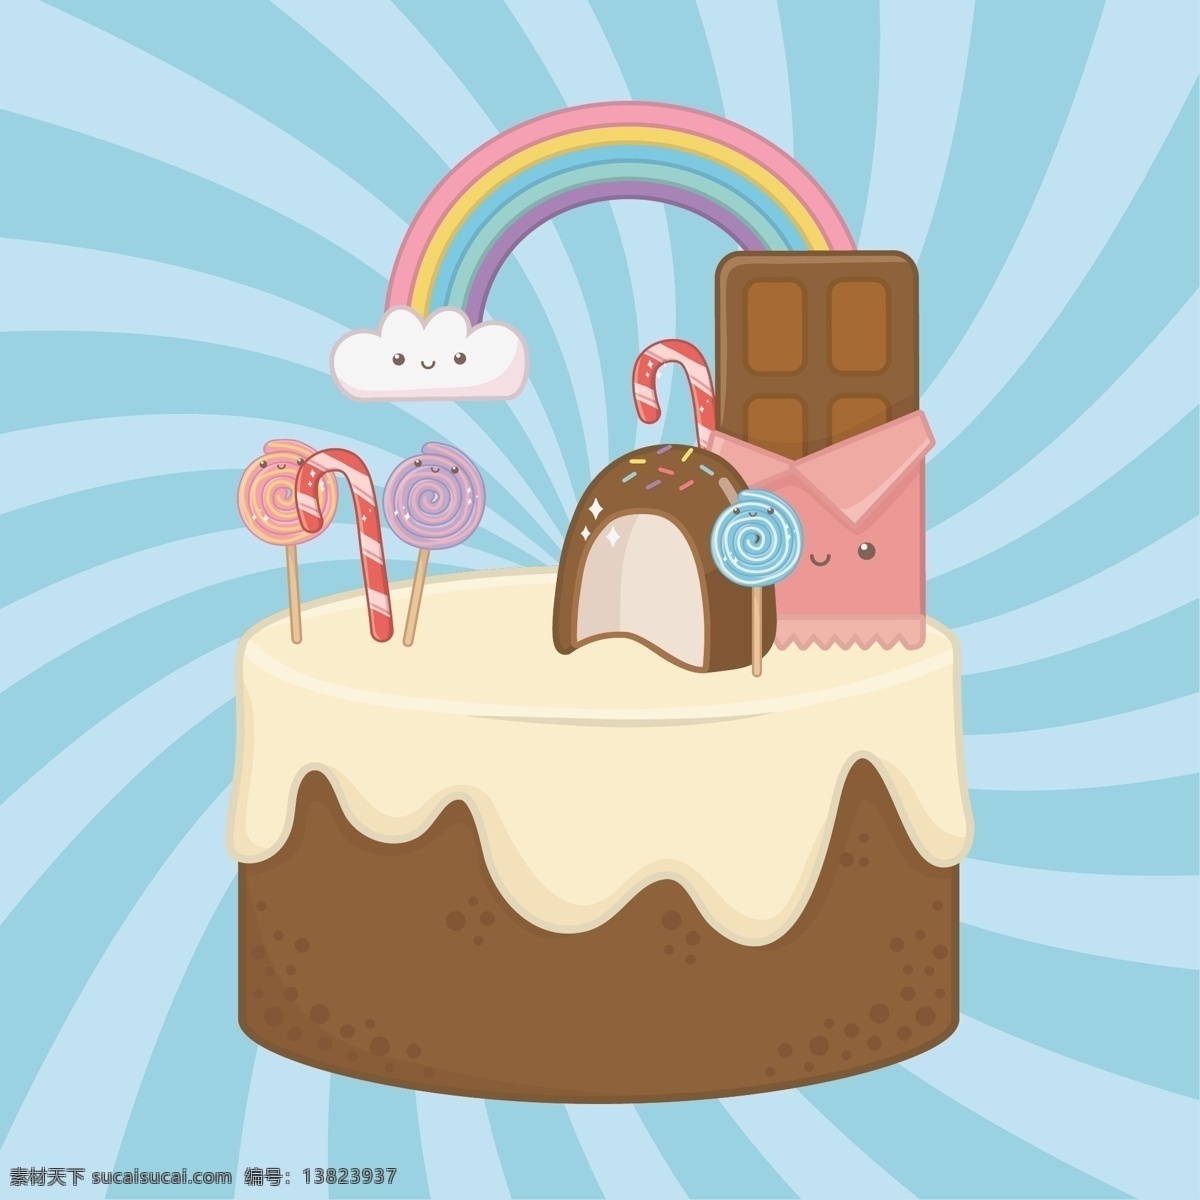 小 清新 点心 卡通 图案 小清新 彩色 创意 夏日装饰 下午茶 蛋糕 冰淇淋 装饰图案 冰棒 巧克力 面包